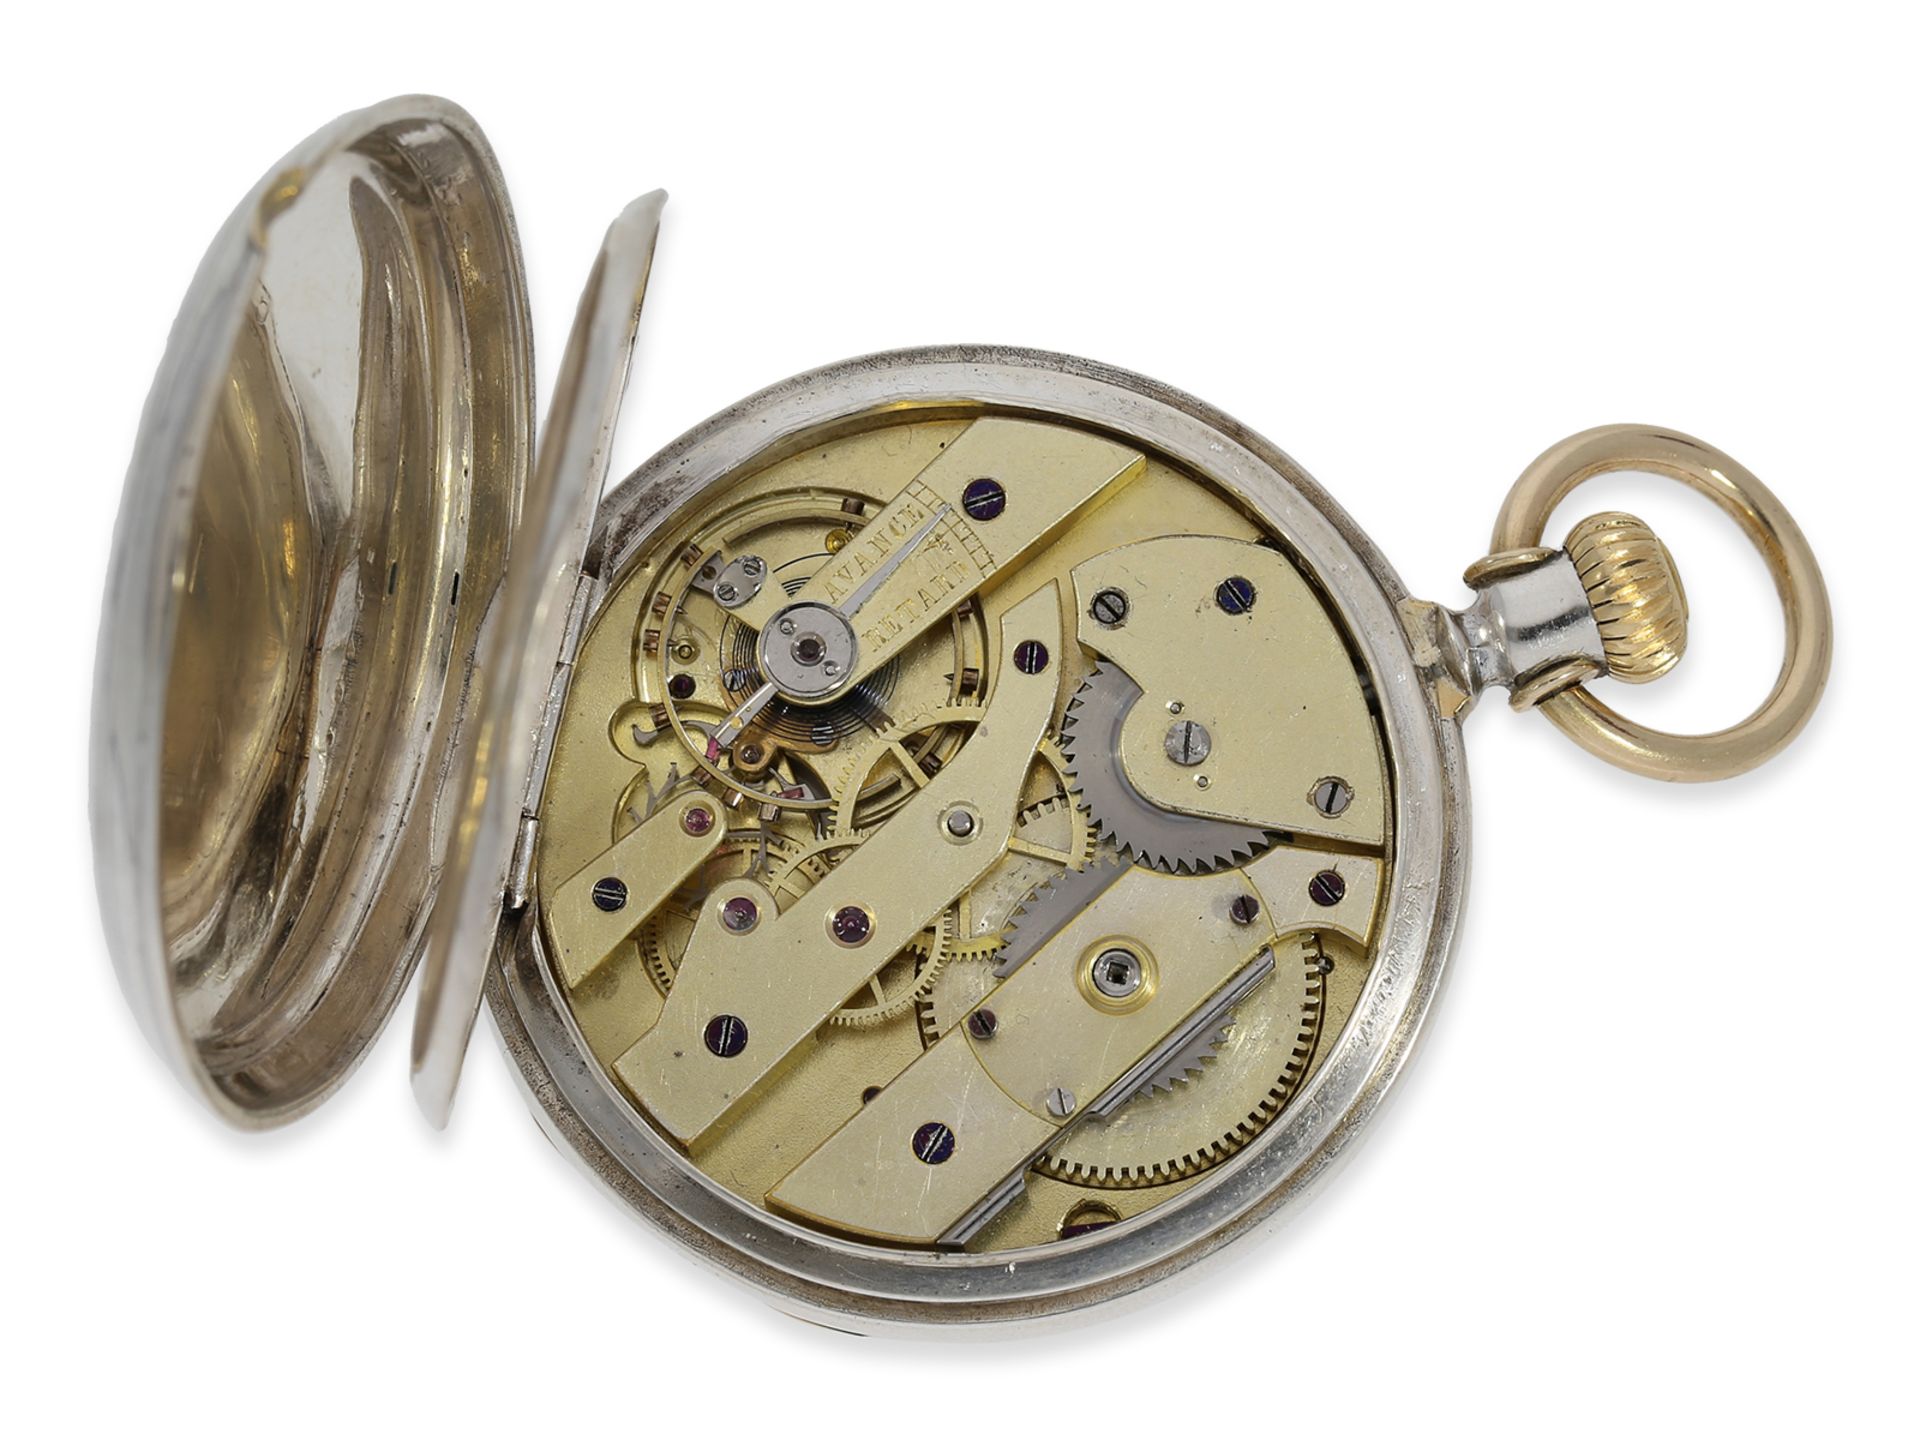 Taschenuhr: frühe, einzigartige Patek Philippe Taschenuhr, Ankerchronometer mit frühem Kronenaufzug  - Bild 2 aus 5